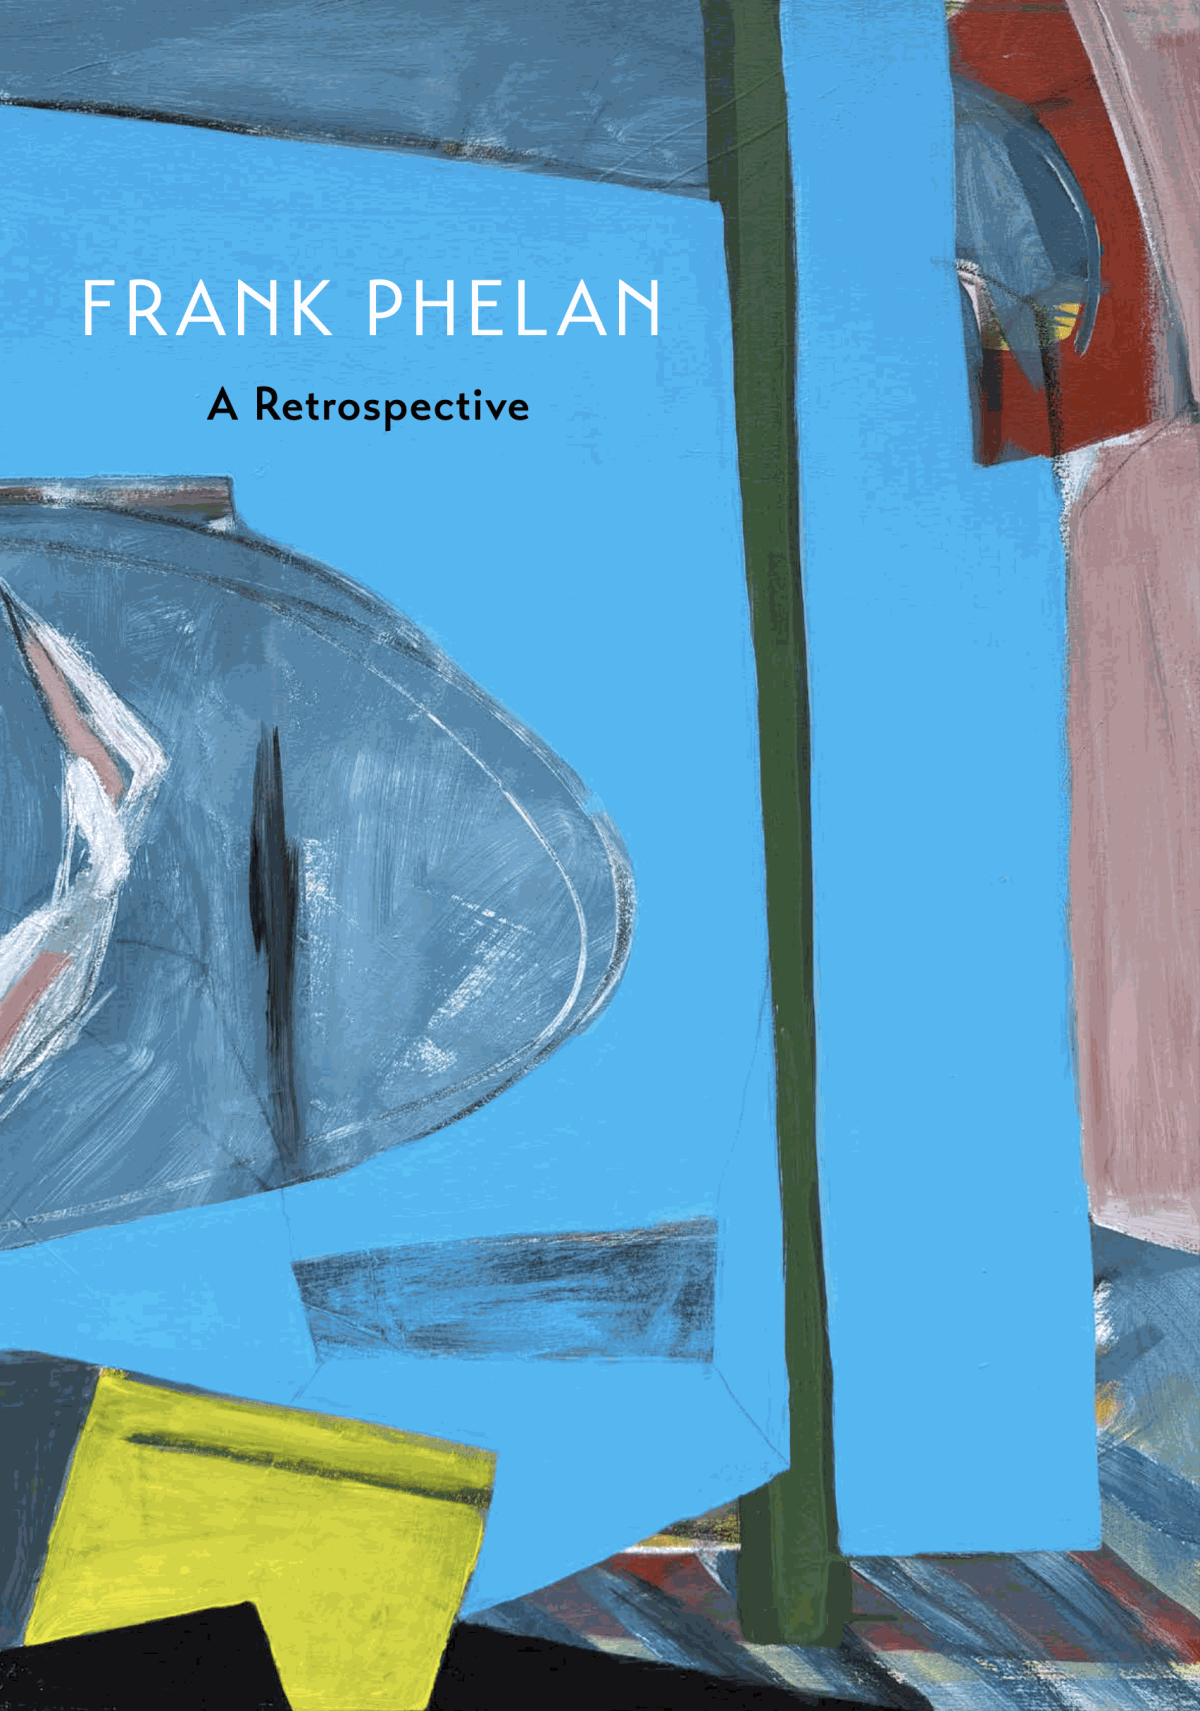 Frank Phelan